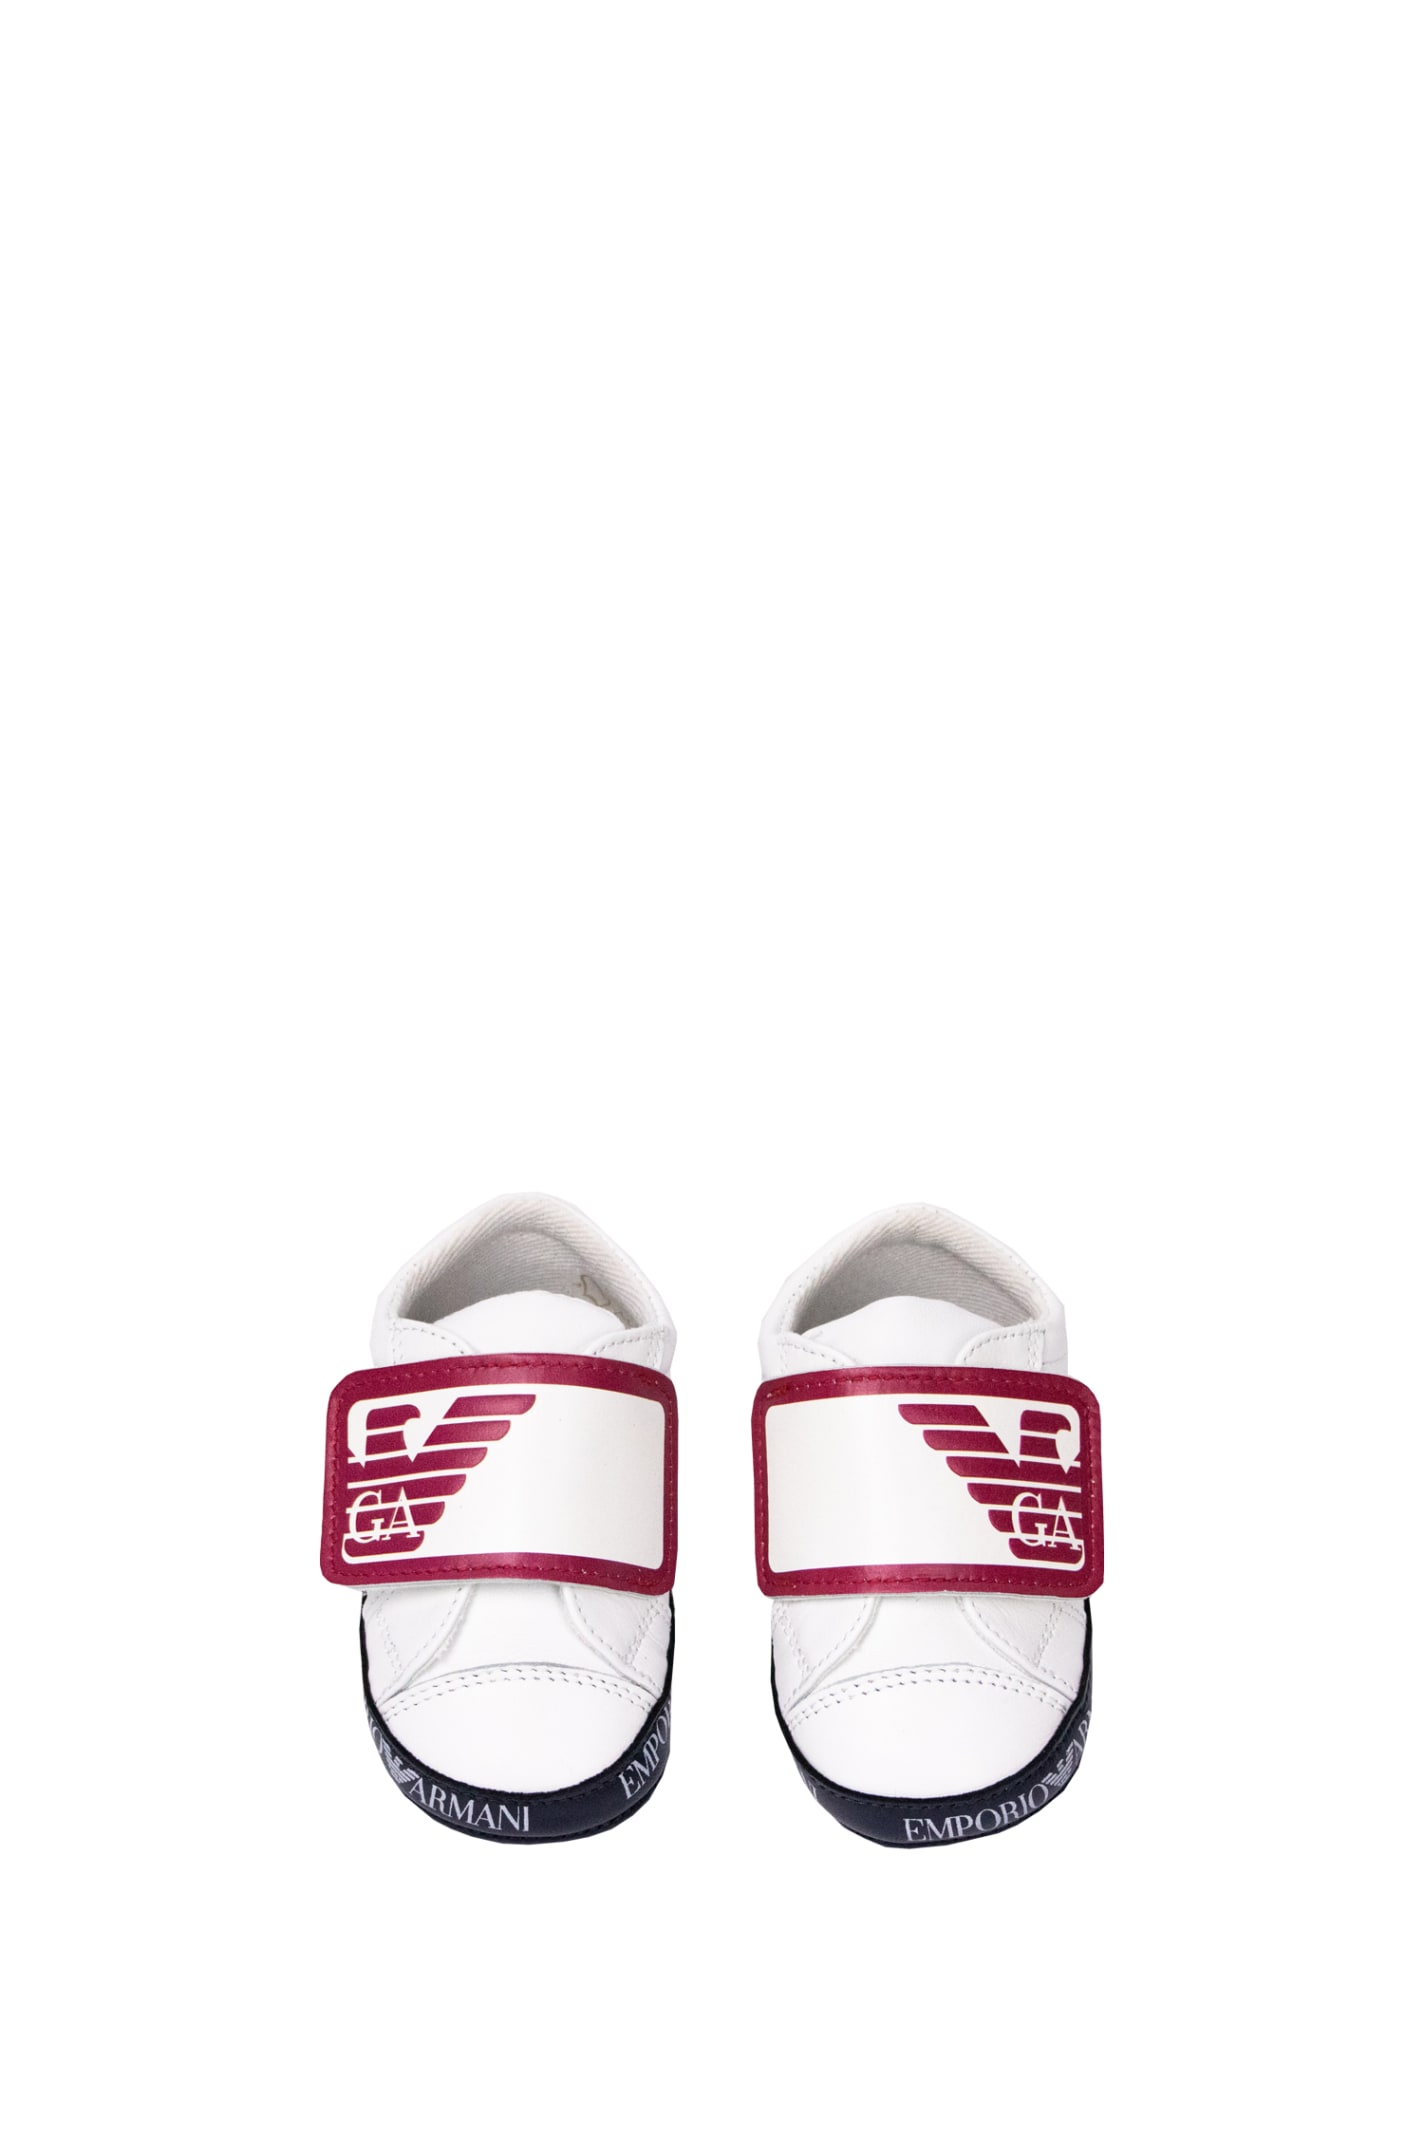 Shop Emporio Armani Cradle Sneakers In White